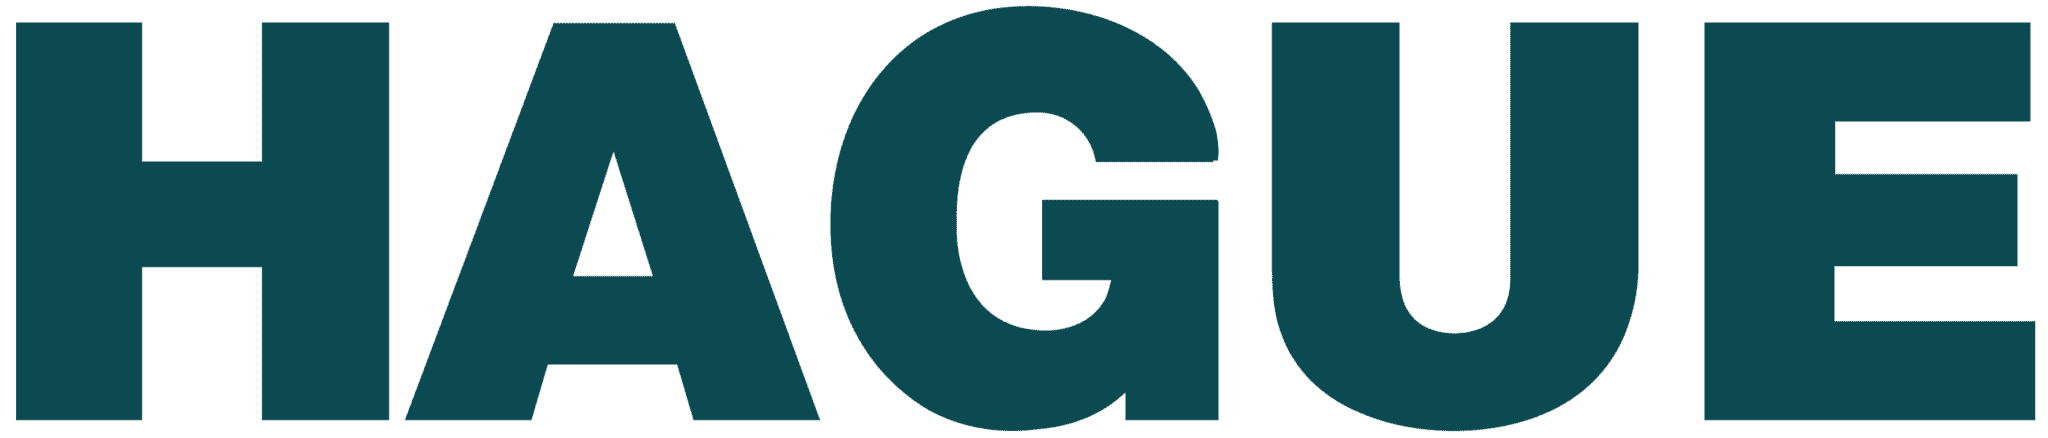 FD Gazellen 2019 logo